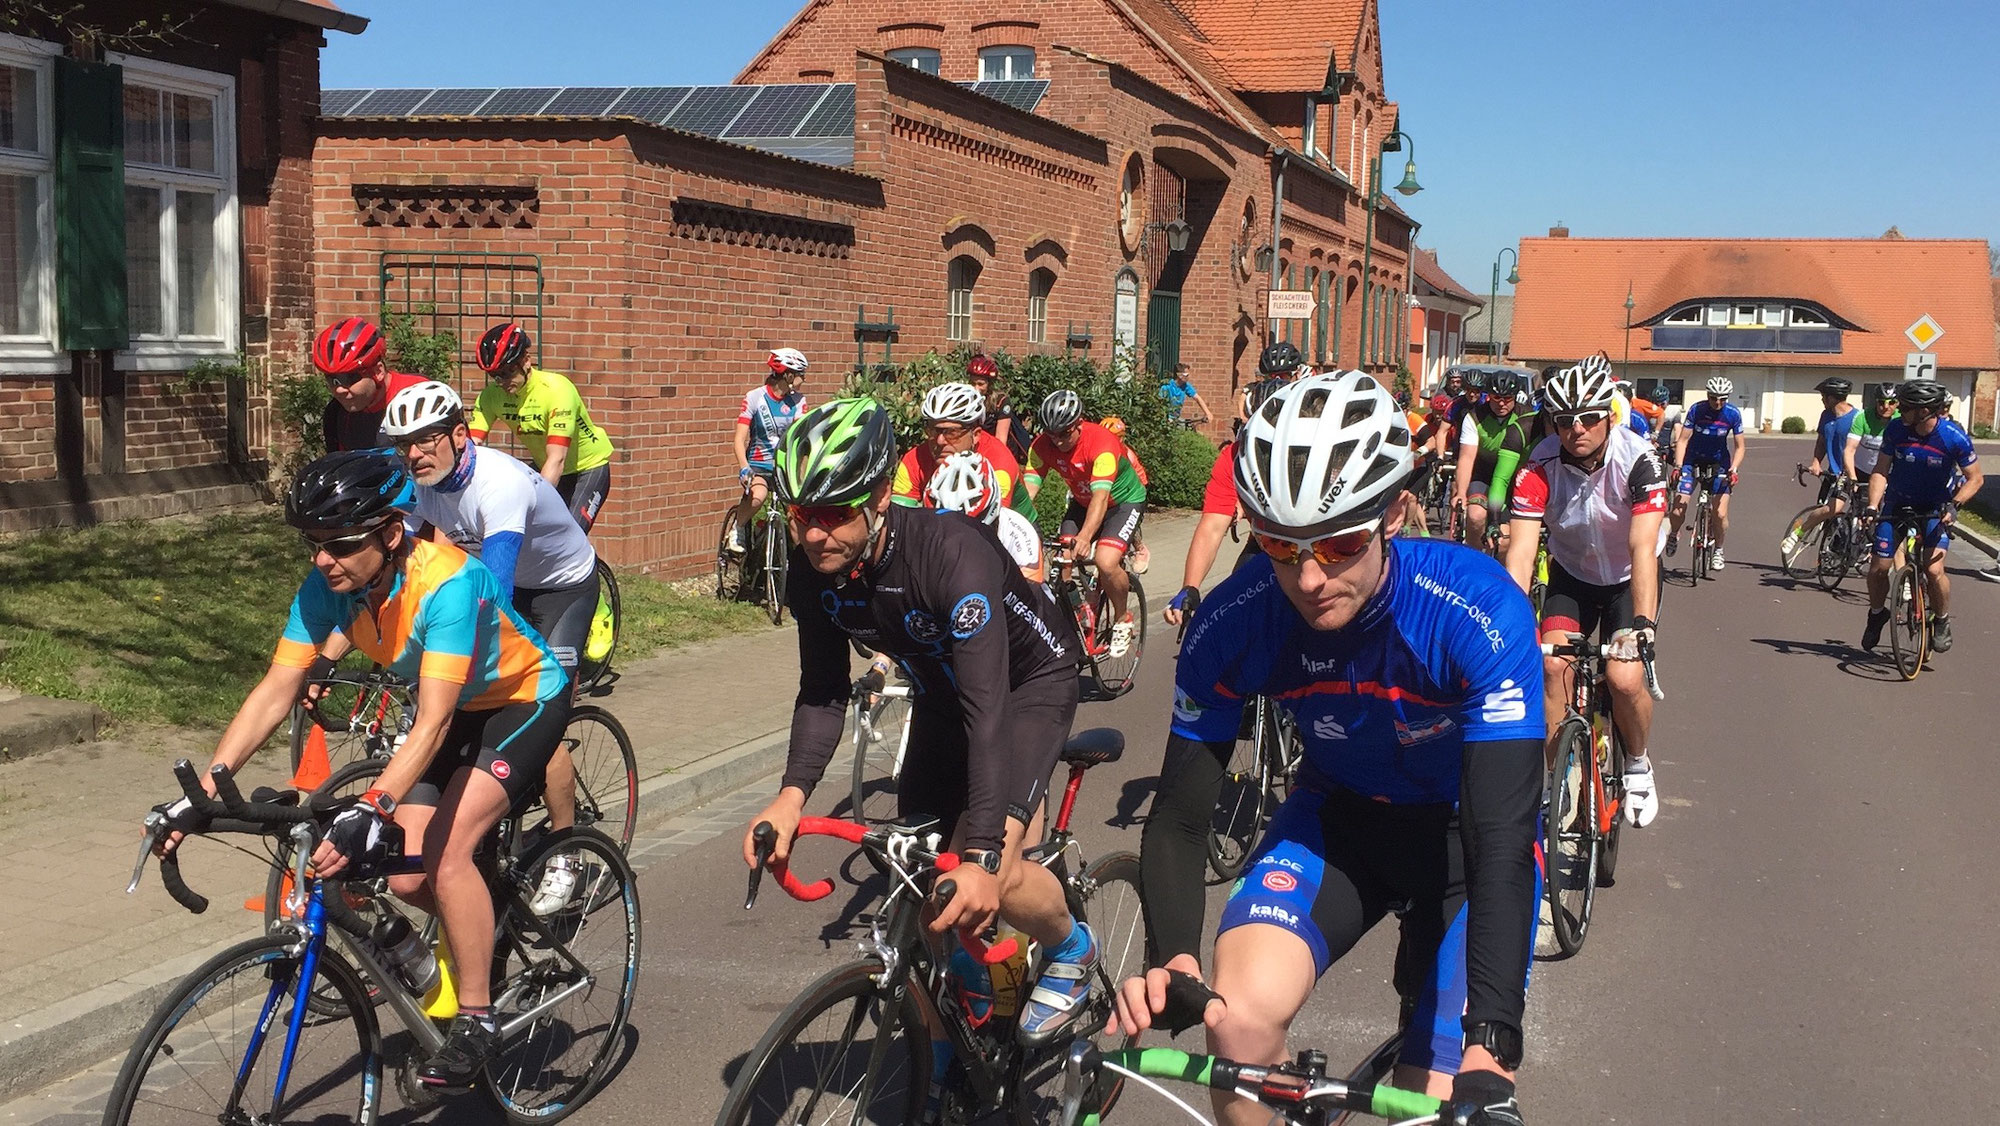 Rennrad-Tour für Hobbysportler in Ferchland